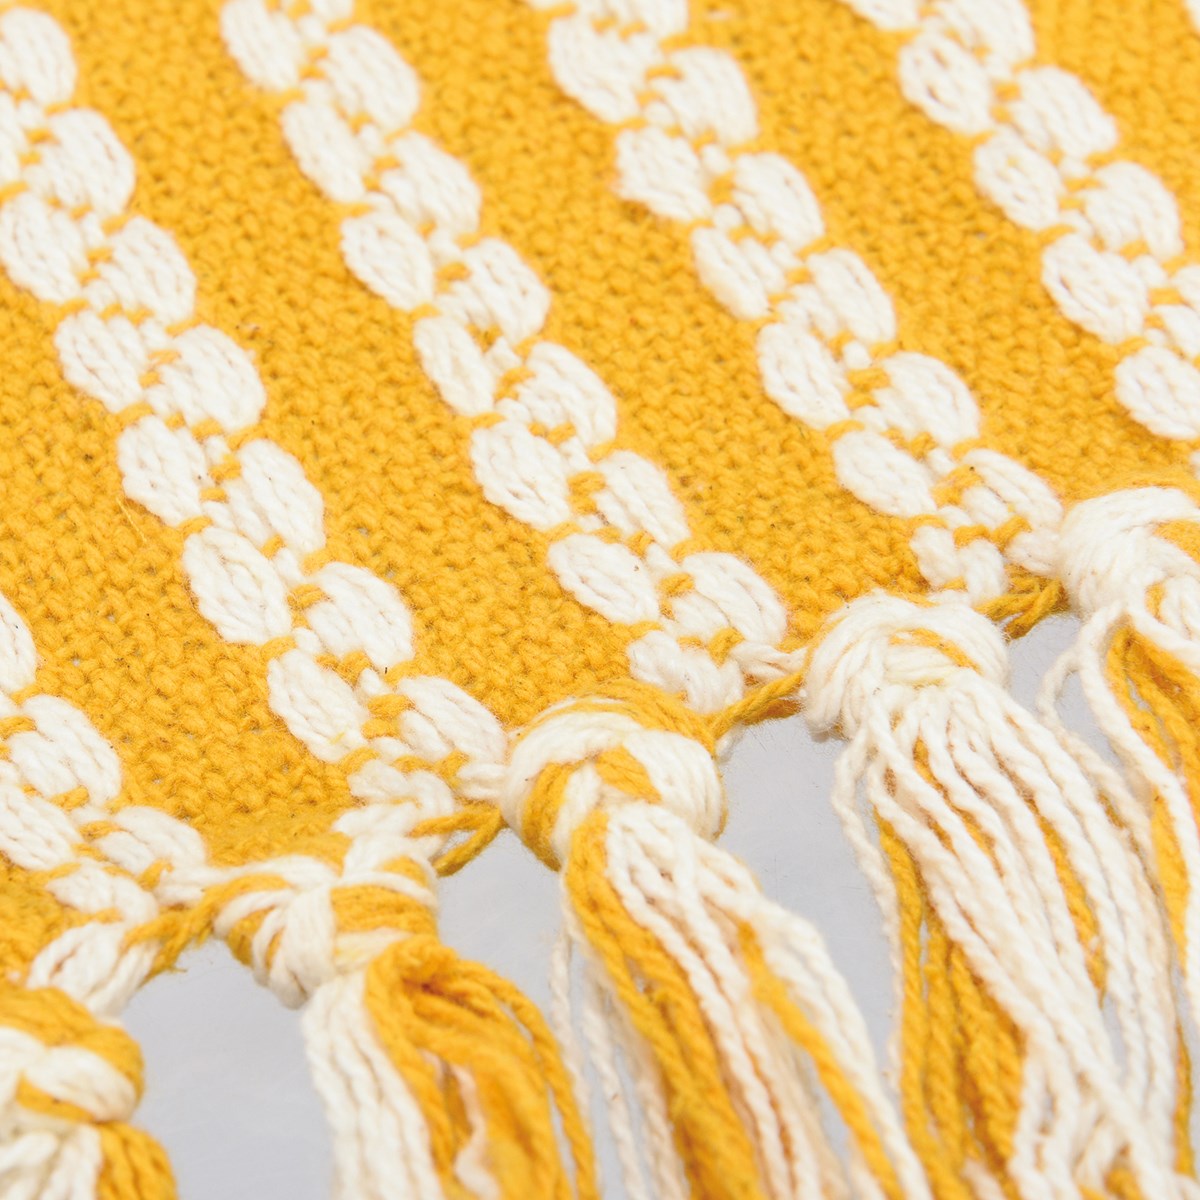 Throw - Yellow Stripes - 50" x 60" - Cotton